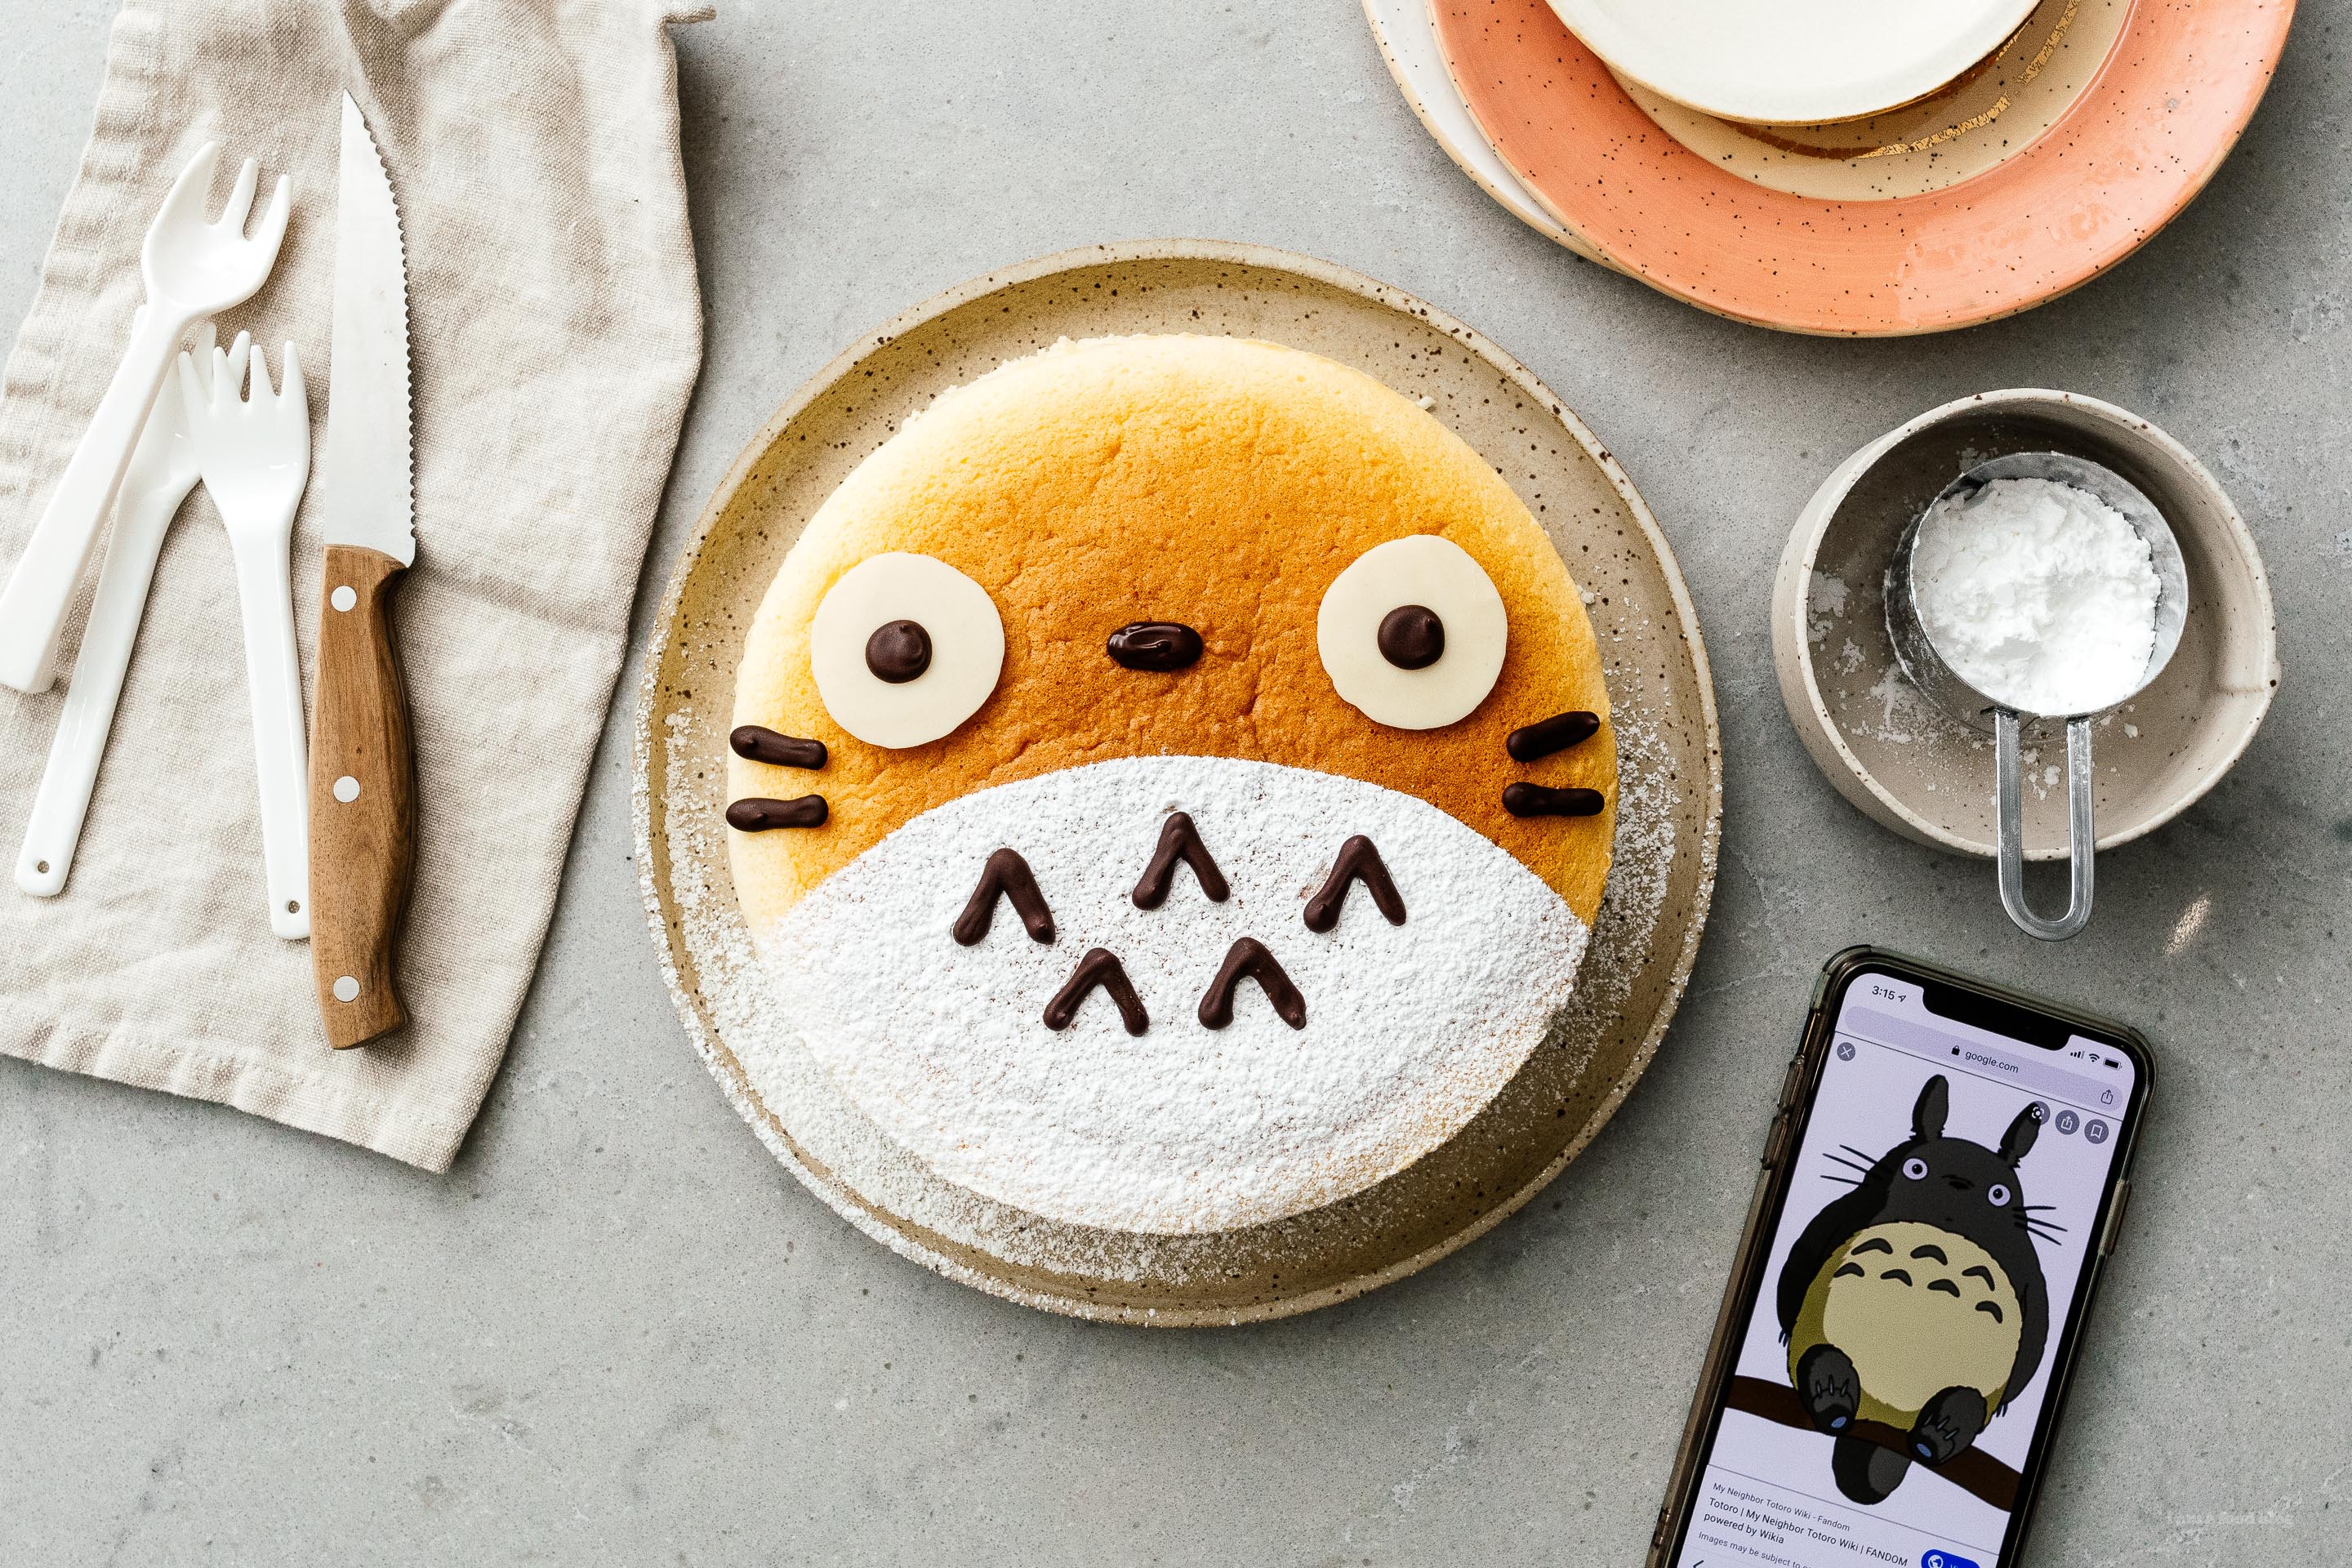 ເຄັກ Totoro Cheesecake ທີ່ໜ້າຮັກ ແລະ ແຊບຊ້ອຍ – ເປັນເນີຍເຄັກທີ່ອ່ອນ ແລະ ໜຽວ ທີ່ອ່ອນນຸ້ມຄືກັບອາກາດ ພ້ອມກັບຄວາມຫວານພຽງໜ້ອຍດຽວ. #ຊີສເຄັກ #japanesecheesecake #fluffycheesecake #totorocake #totorocheesecake #totorofood #kawaiifood